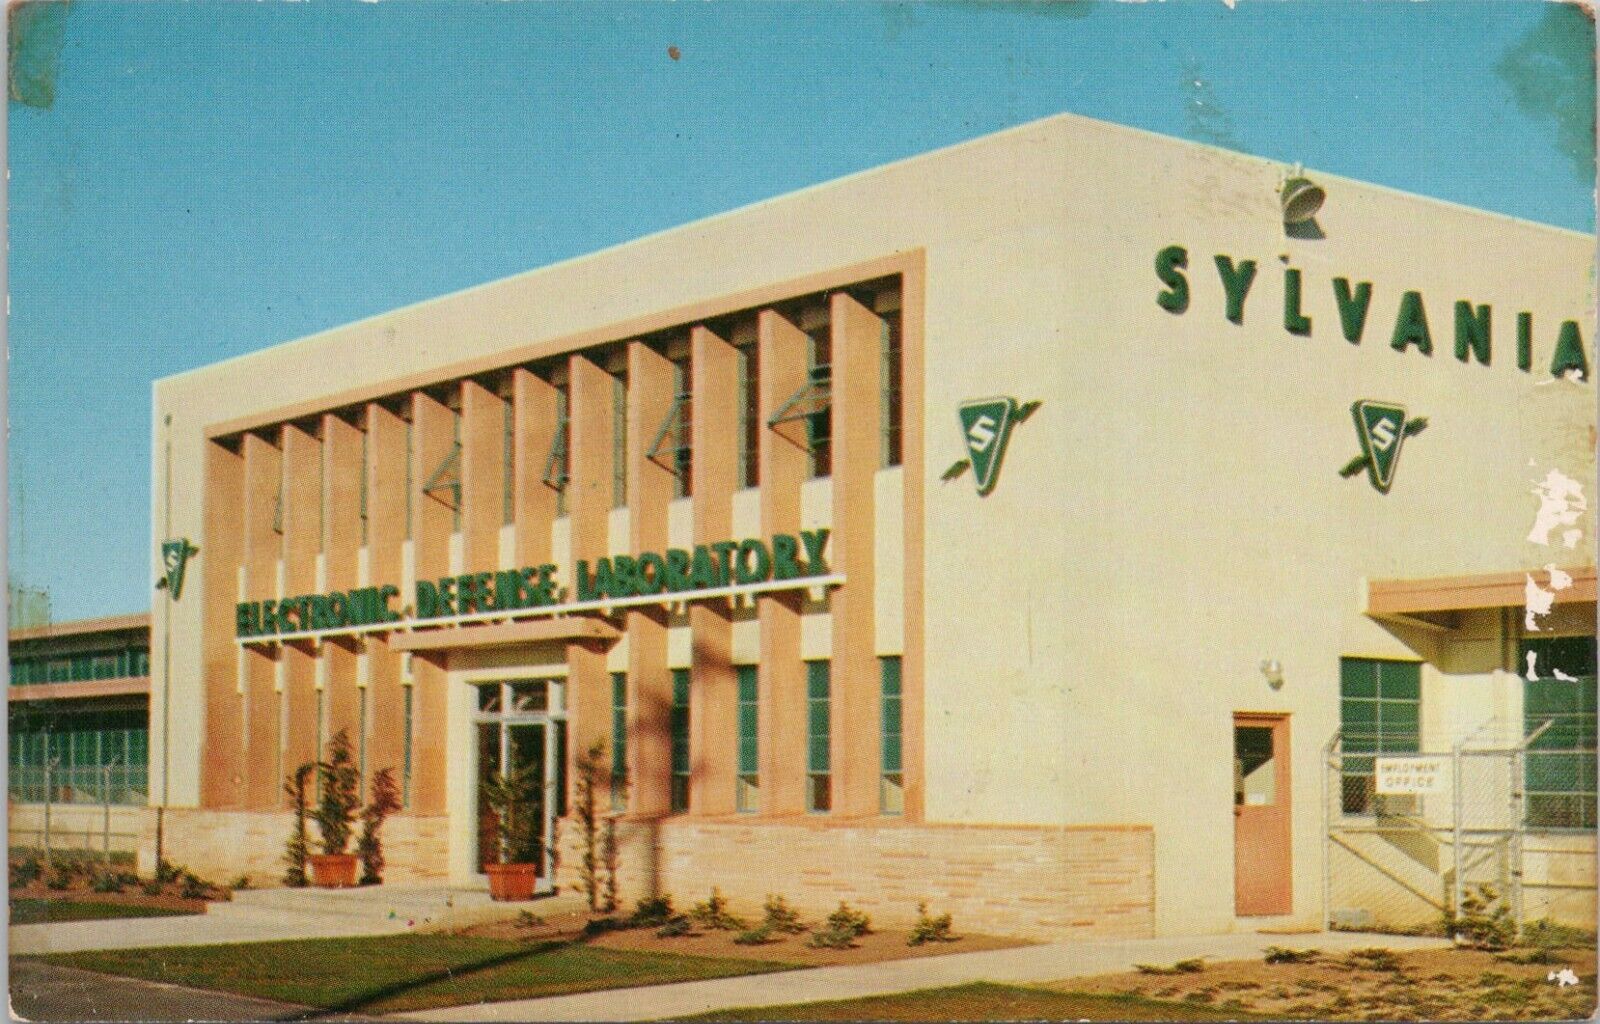 Photo PC * Mountain View California Sylvania Electronic Defense Labs 1960s